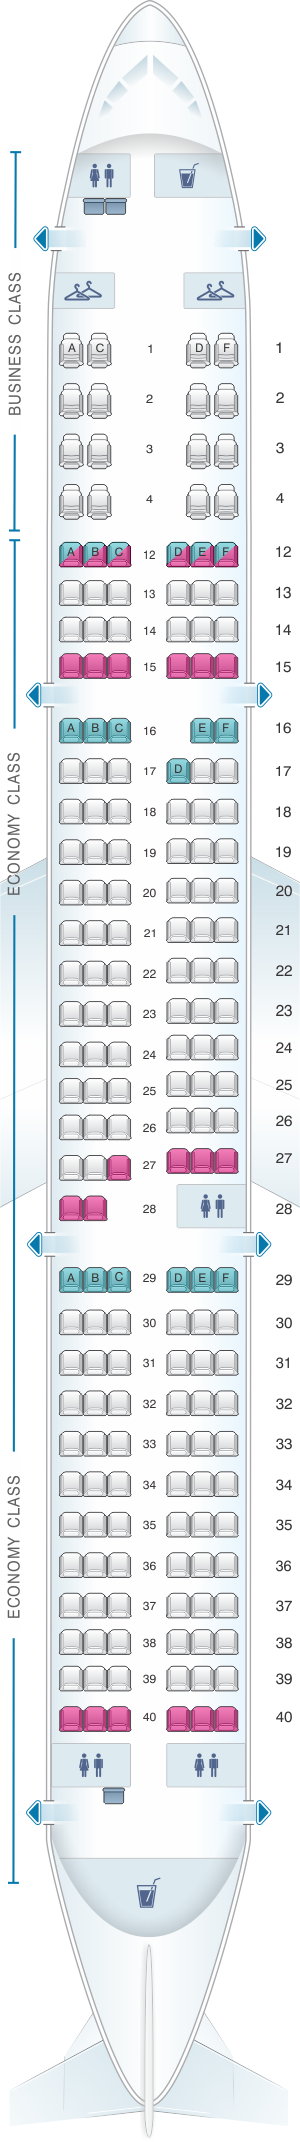 Plan de cabine Air Canada Airbus A321 200 | SeatMaestro.fr